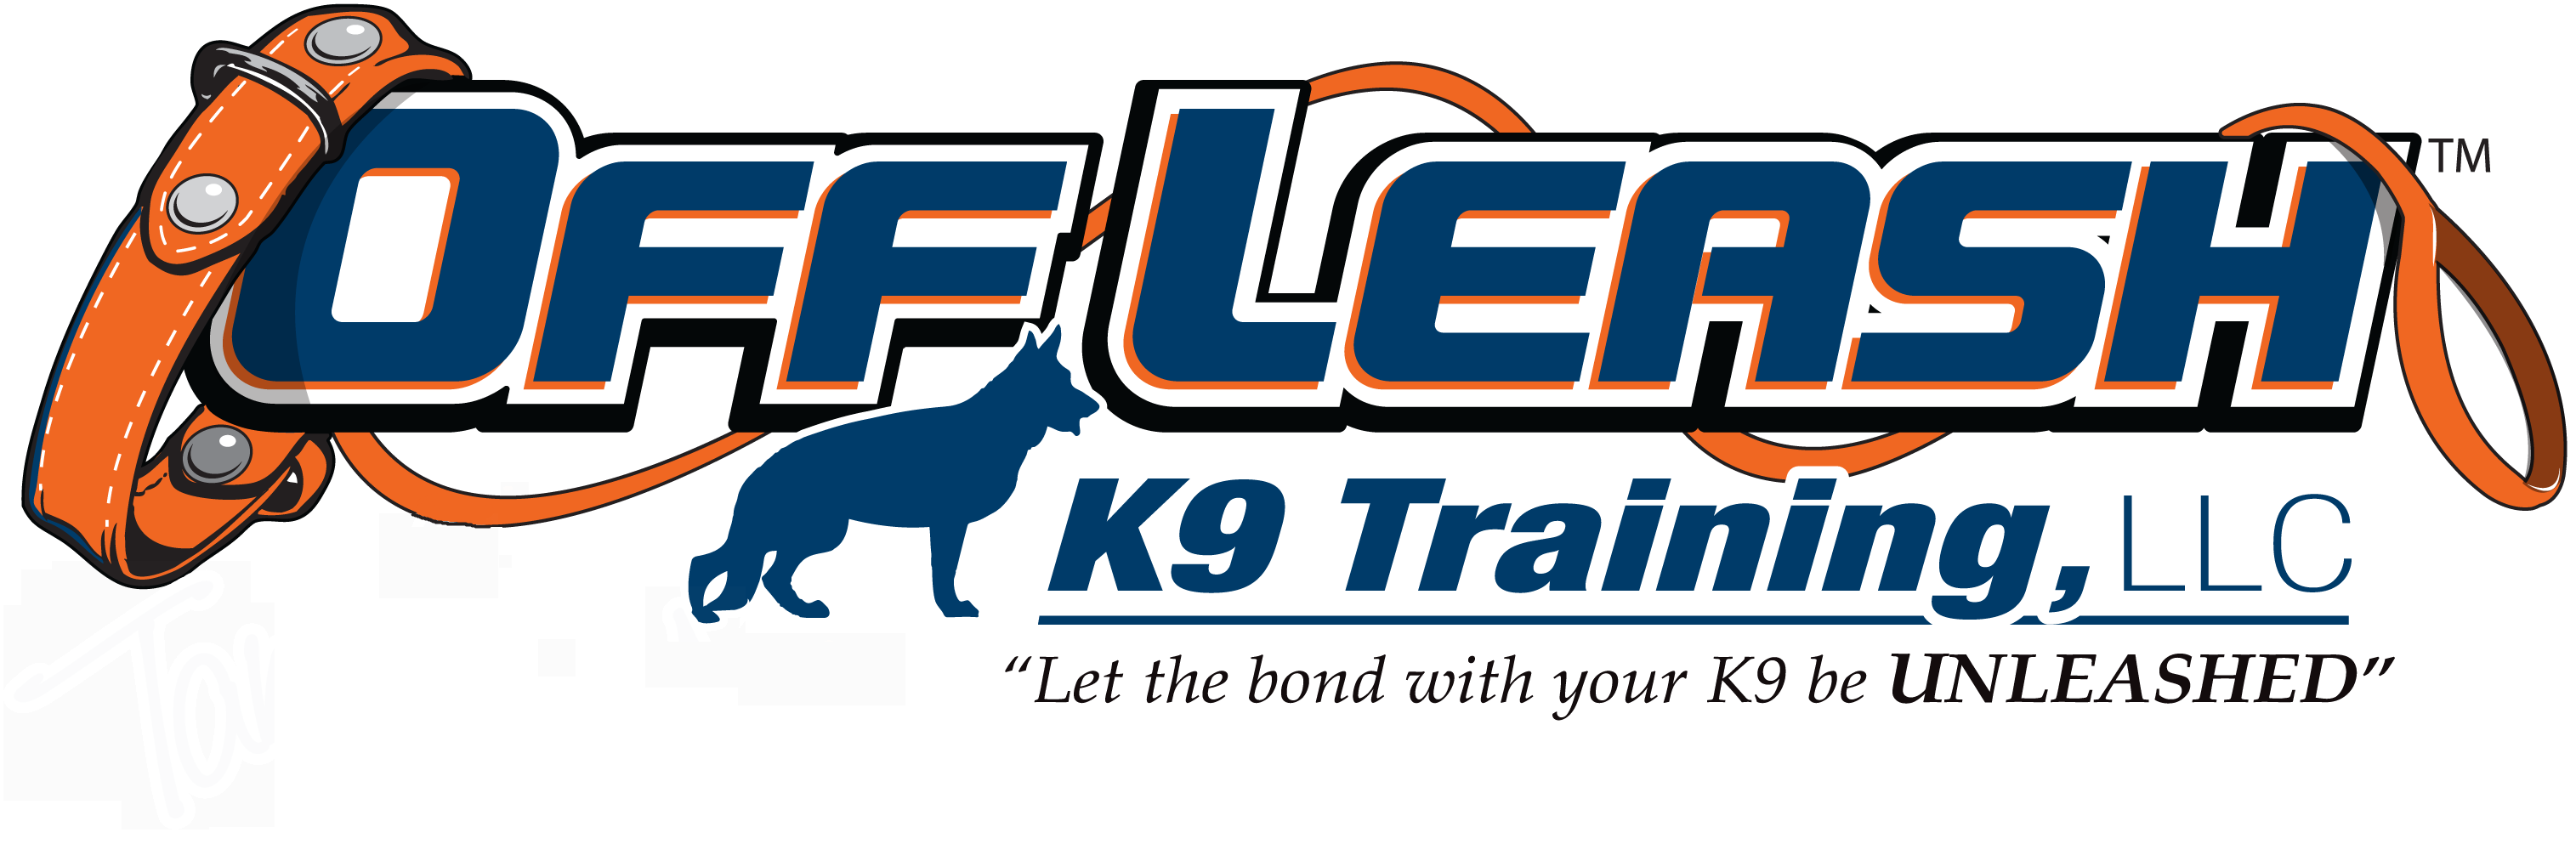 Katy Texas Offleash K9 Dog Training